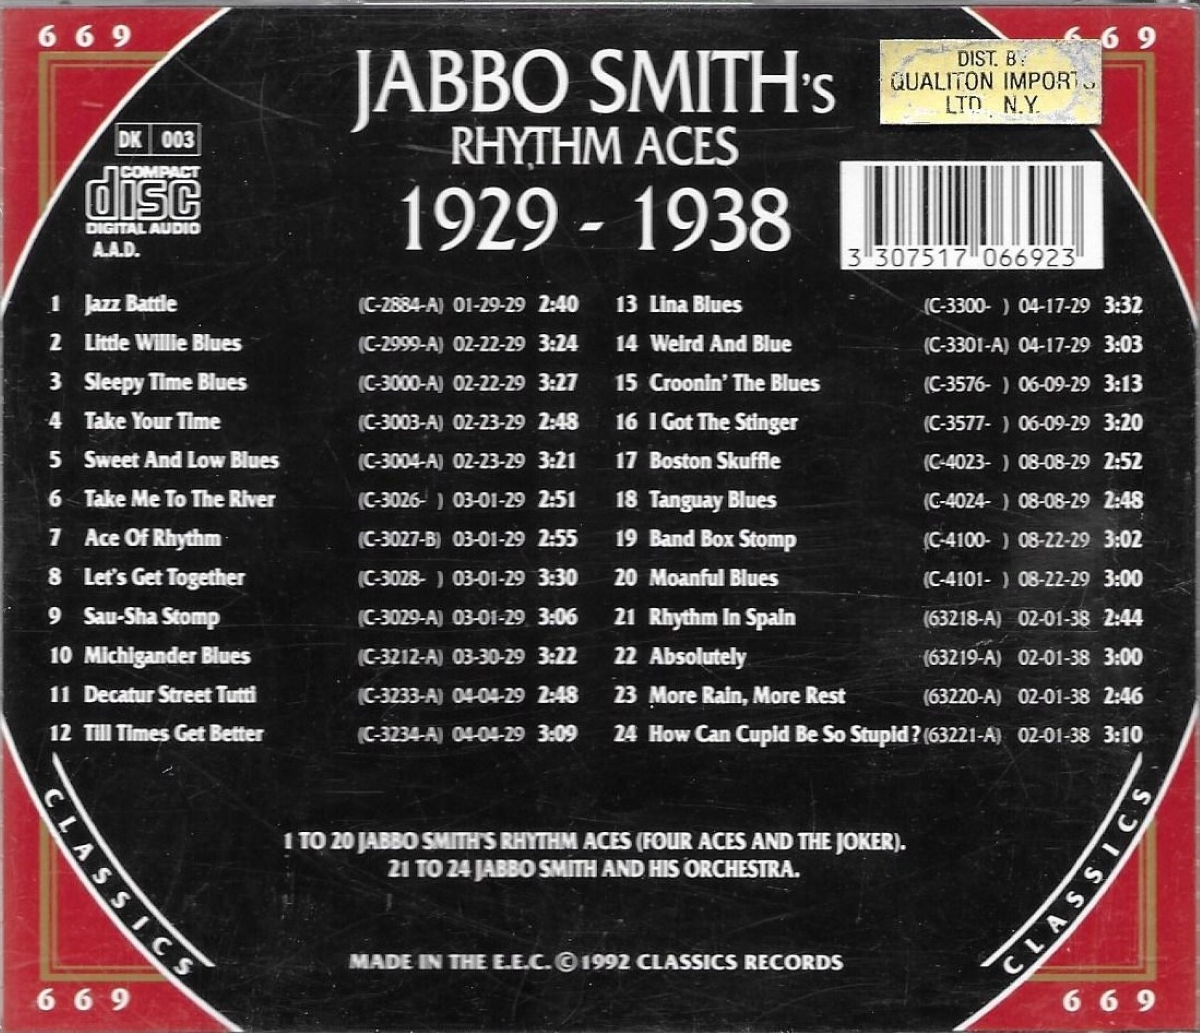 The Chronological Jabbo Smith's Rhythm Aces-1929-1938